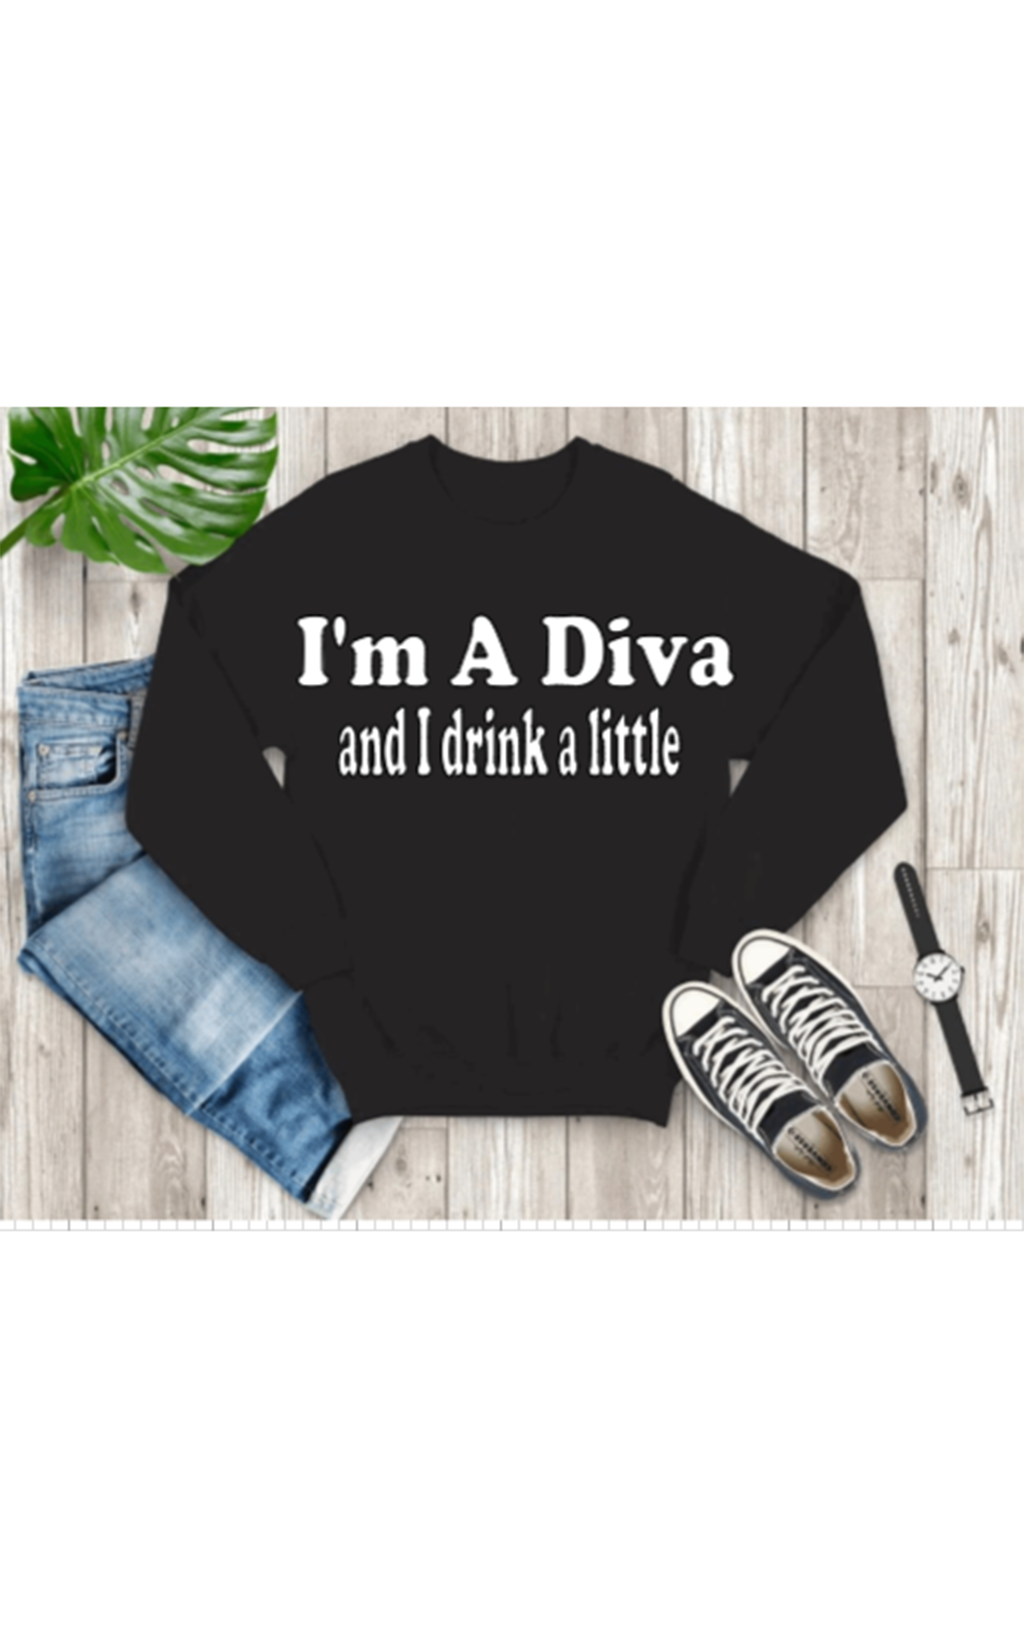 I'm A Diva